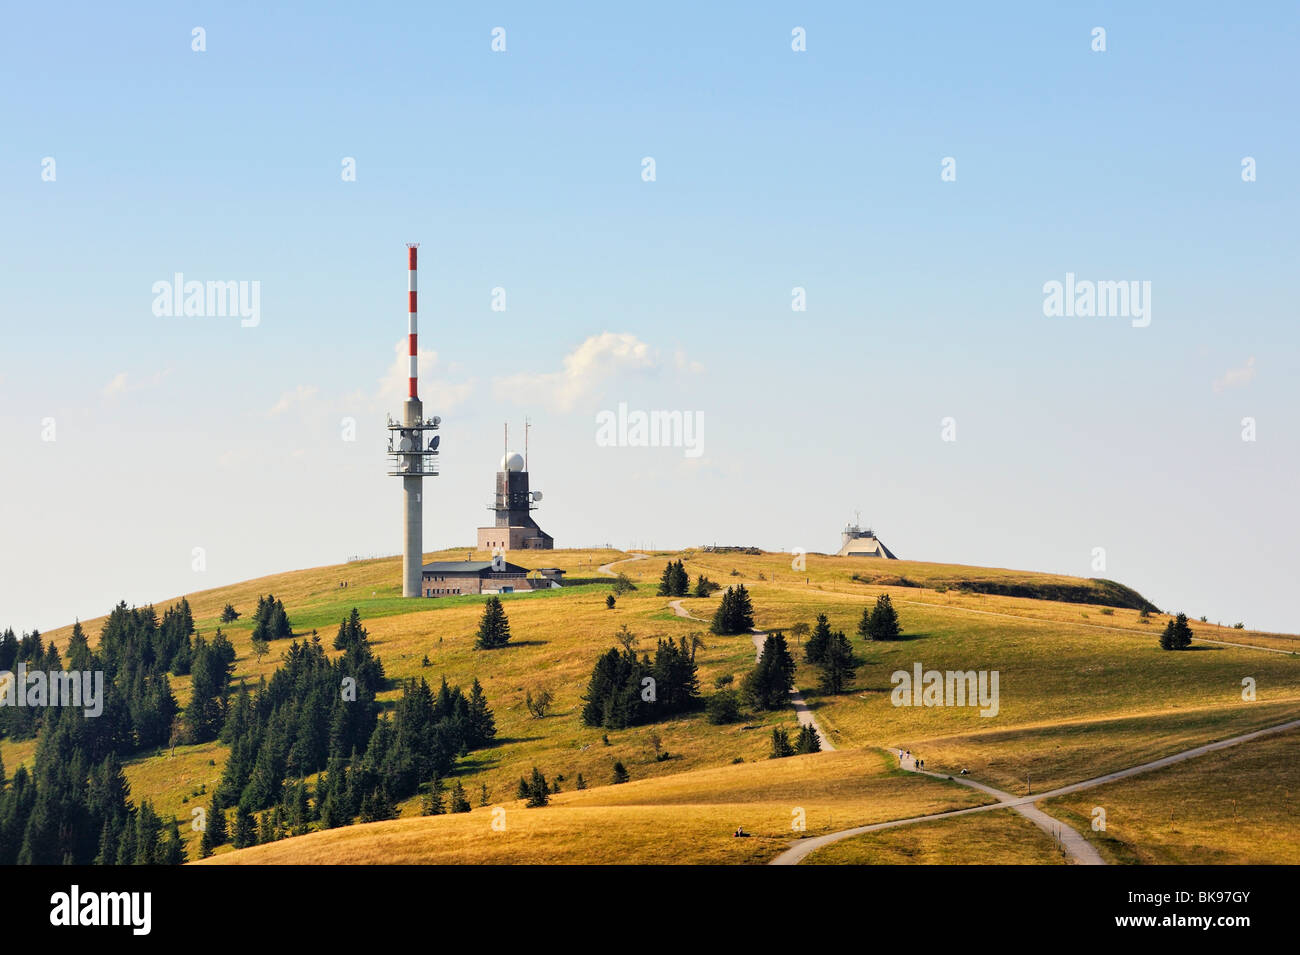 Blick auf den Gipfel des Feldbergs mit Wetterstation und Feldberg-Turm,  Regierungsbezirk Freiburg, Baden-Württemberg Stockfotografie - Alamy